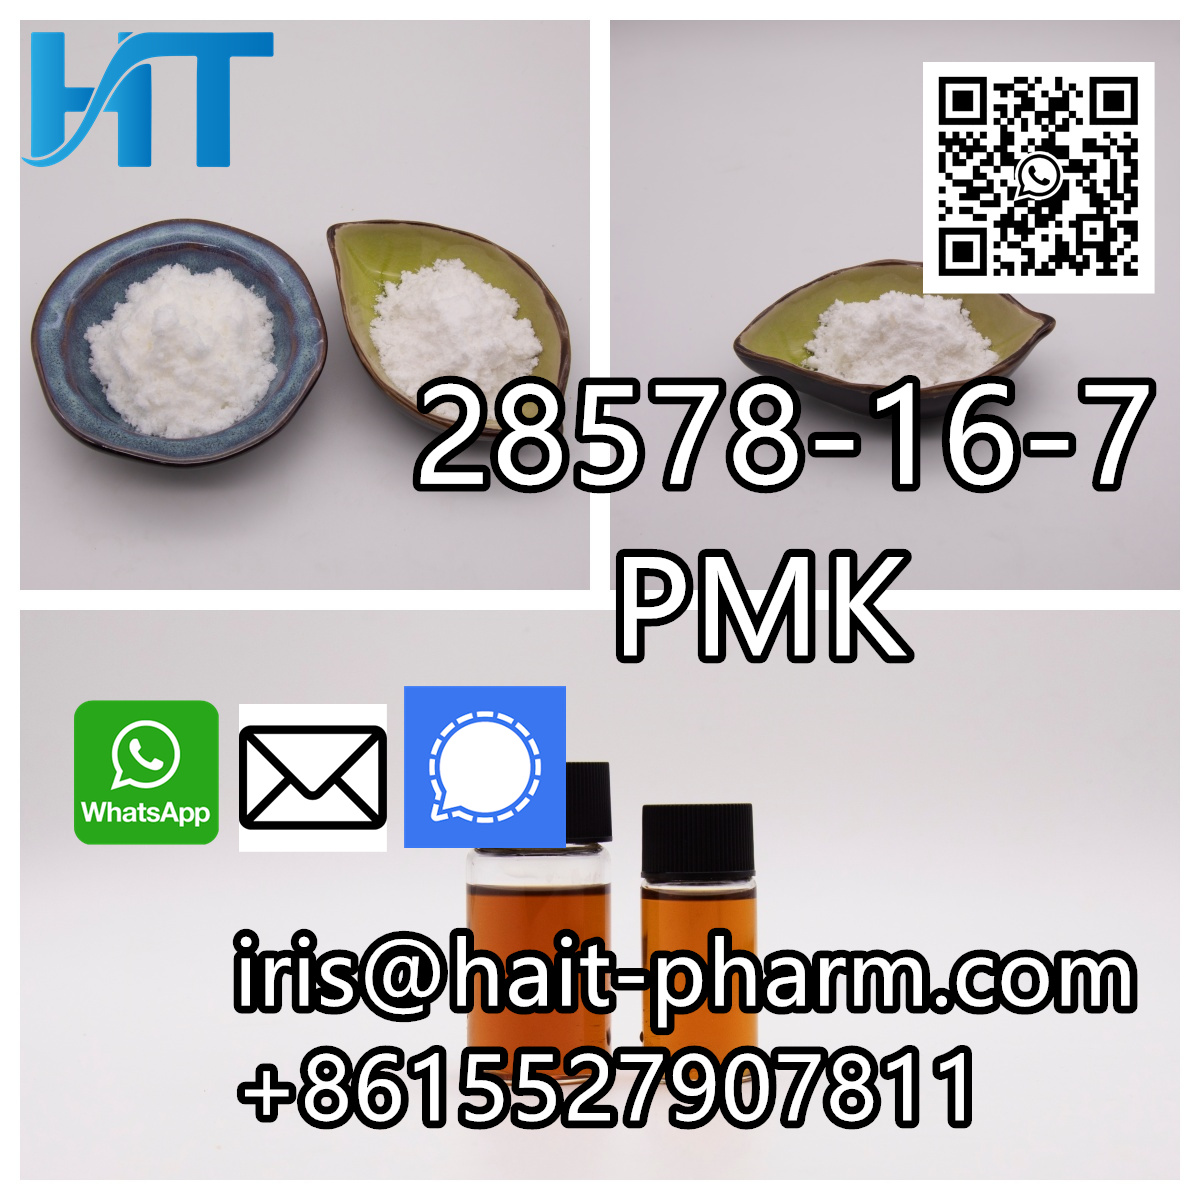 Cas 28578167 PMK ethyl glycidate  new PMK Powder - Hawaii - Honolulu ID1545353